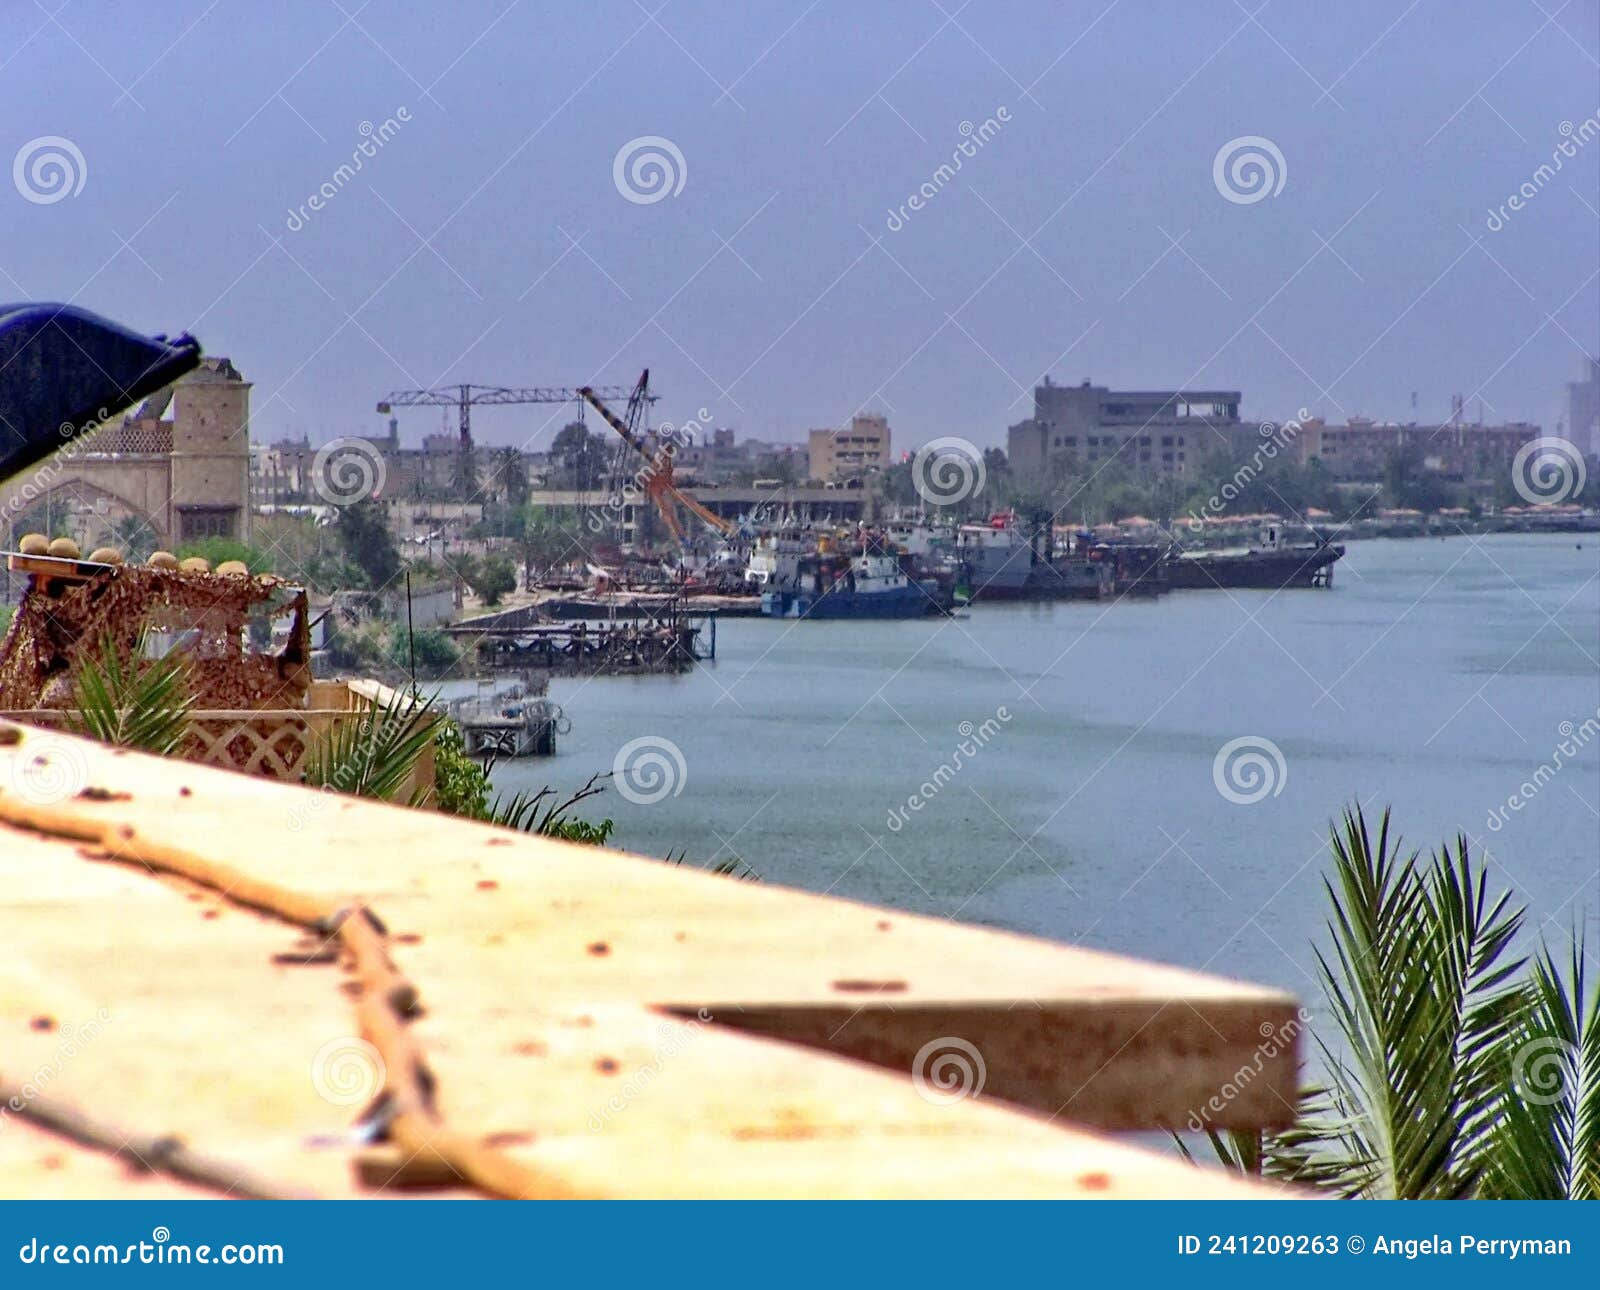 ships on the shatt al-arab river in basra